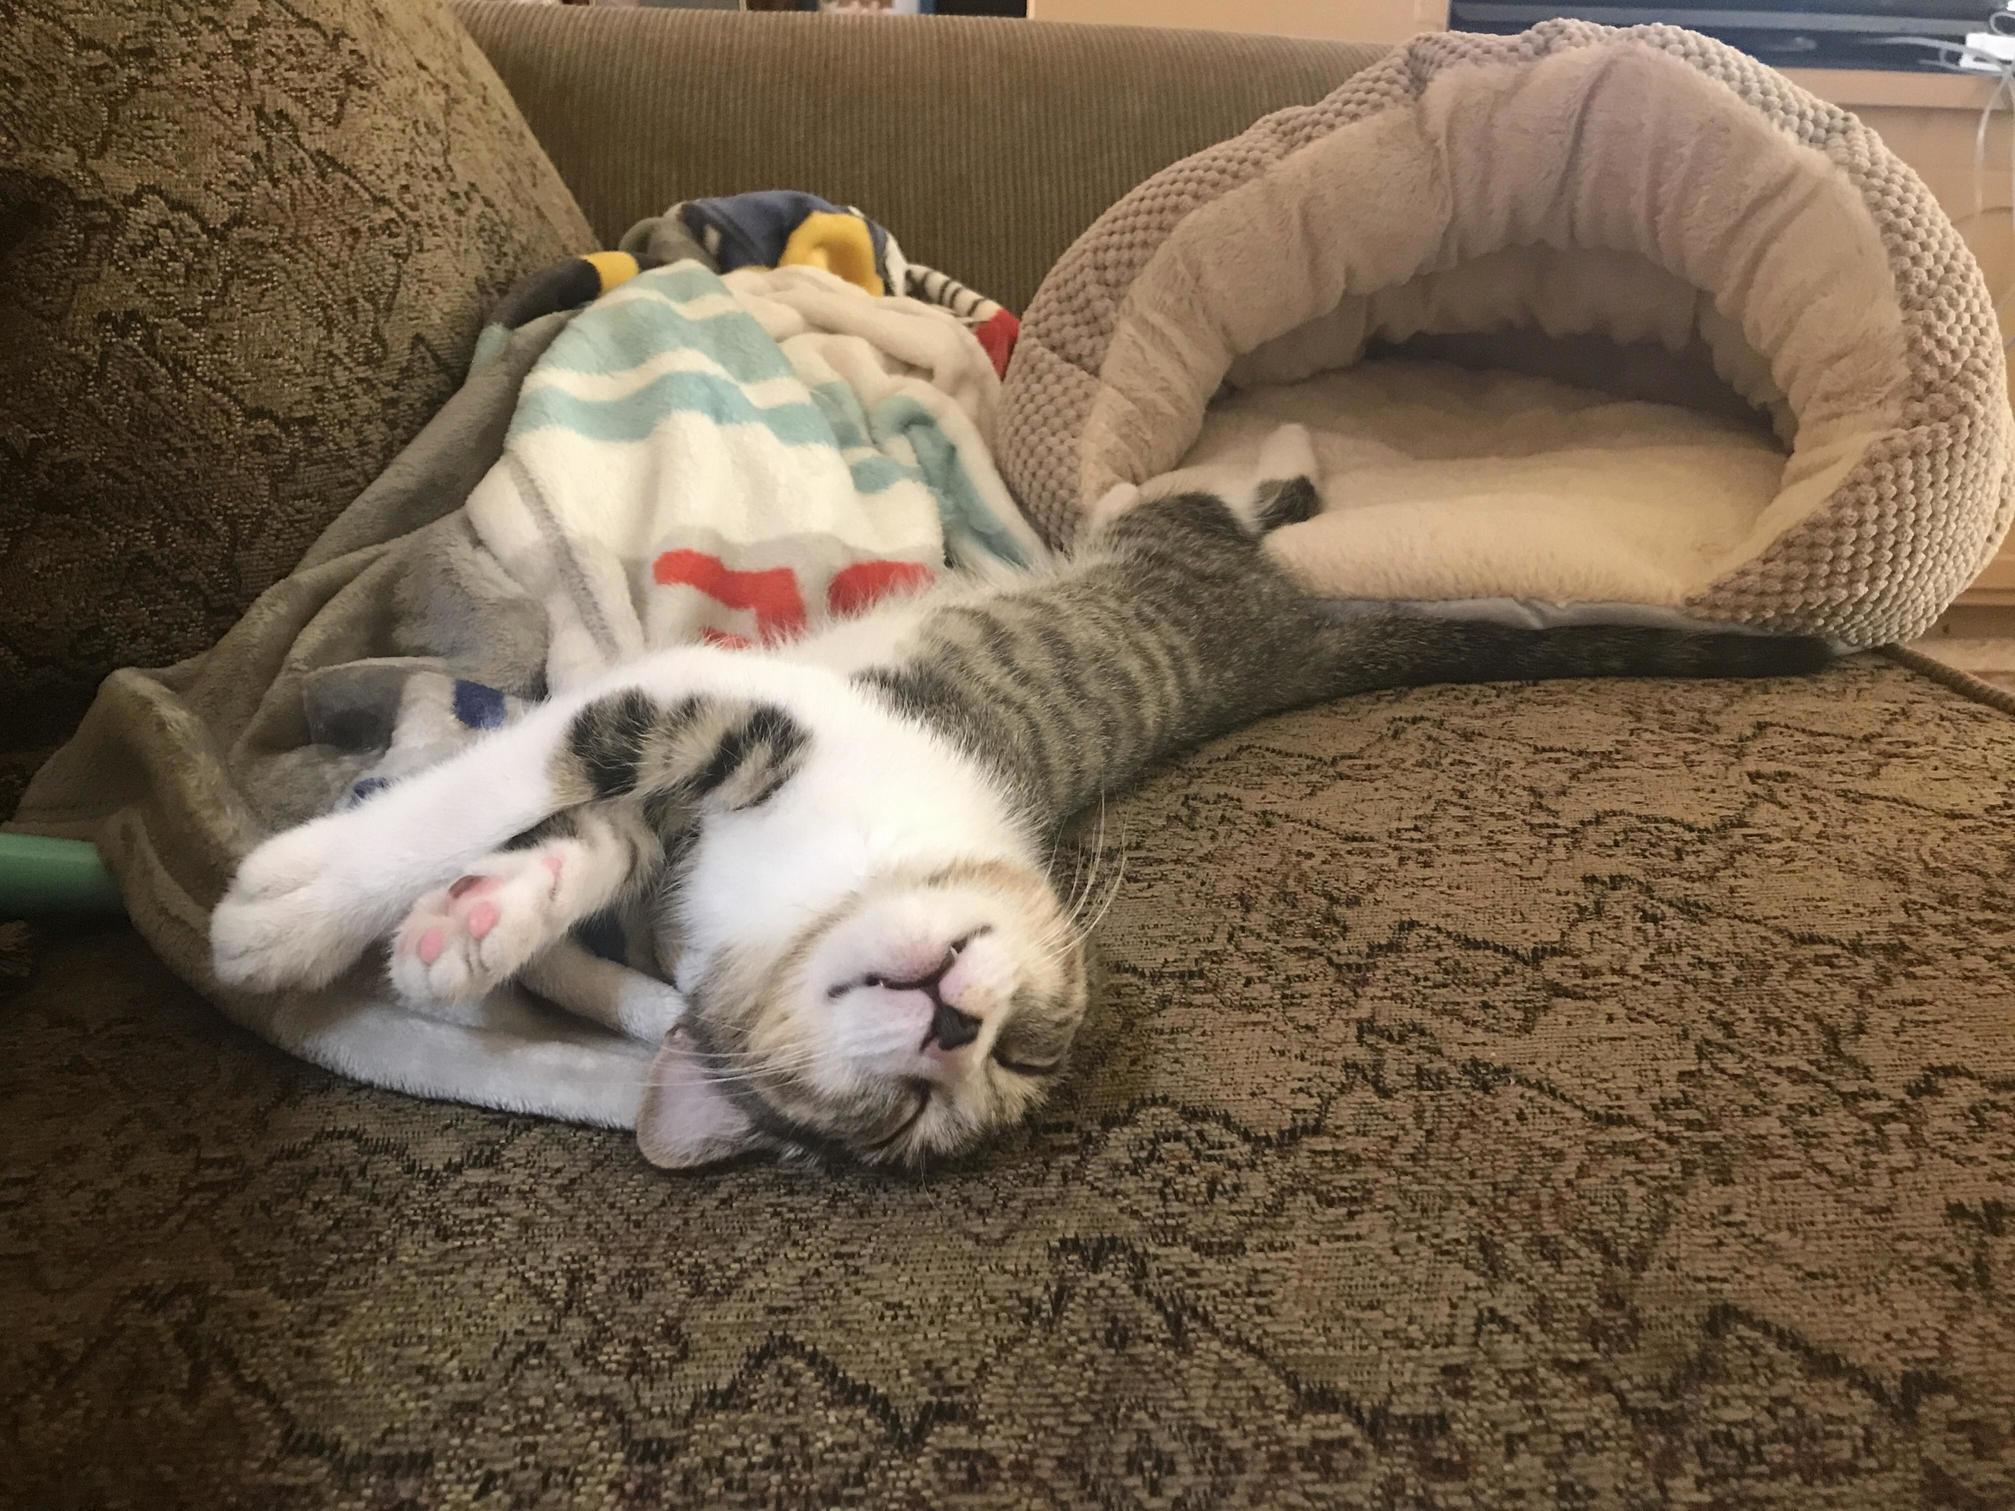 Kittens sleep in the weirdest positions